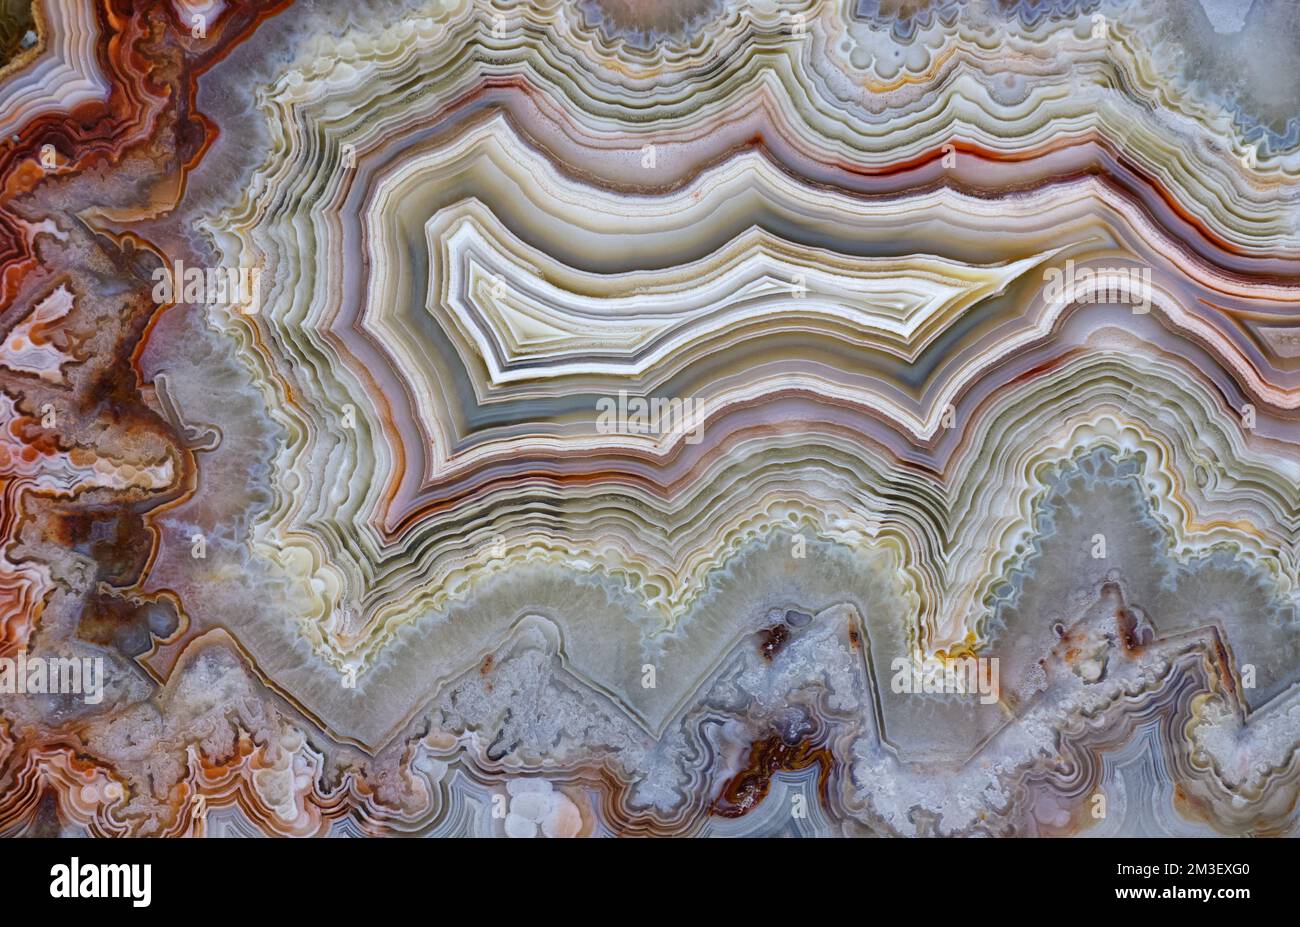 Hintergründe und Texturen: Oberfläche aus wunderschönem dekorativem Stein, abstraktes mehrfarbiges Mineralmuster mit Rissen, Flecken und Flecken, natürlicher Hintergrund Stockfoto